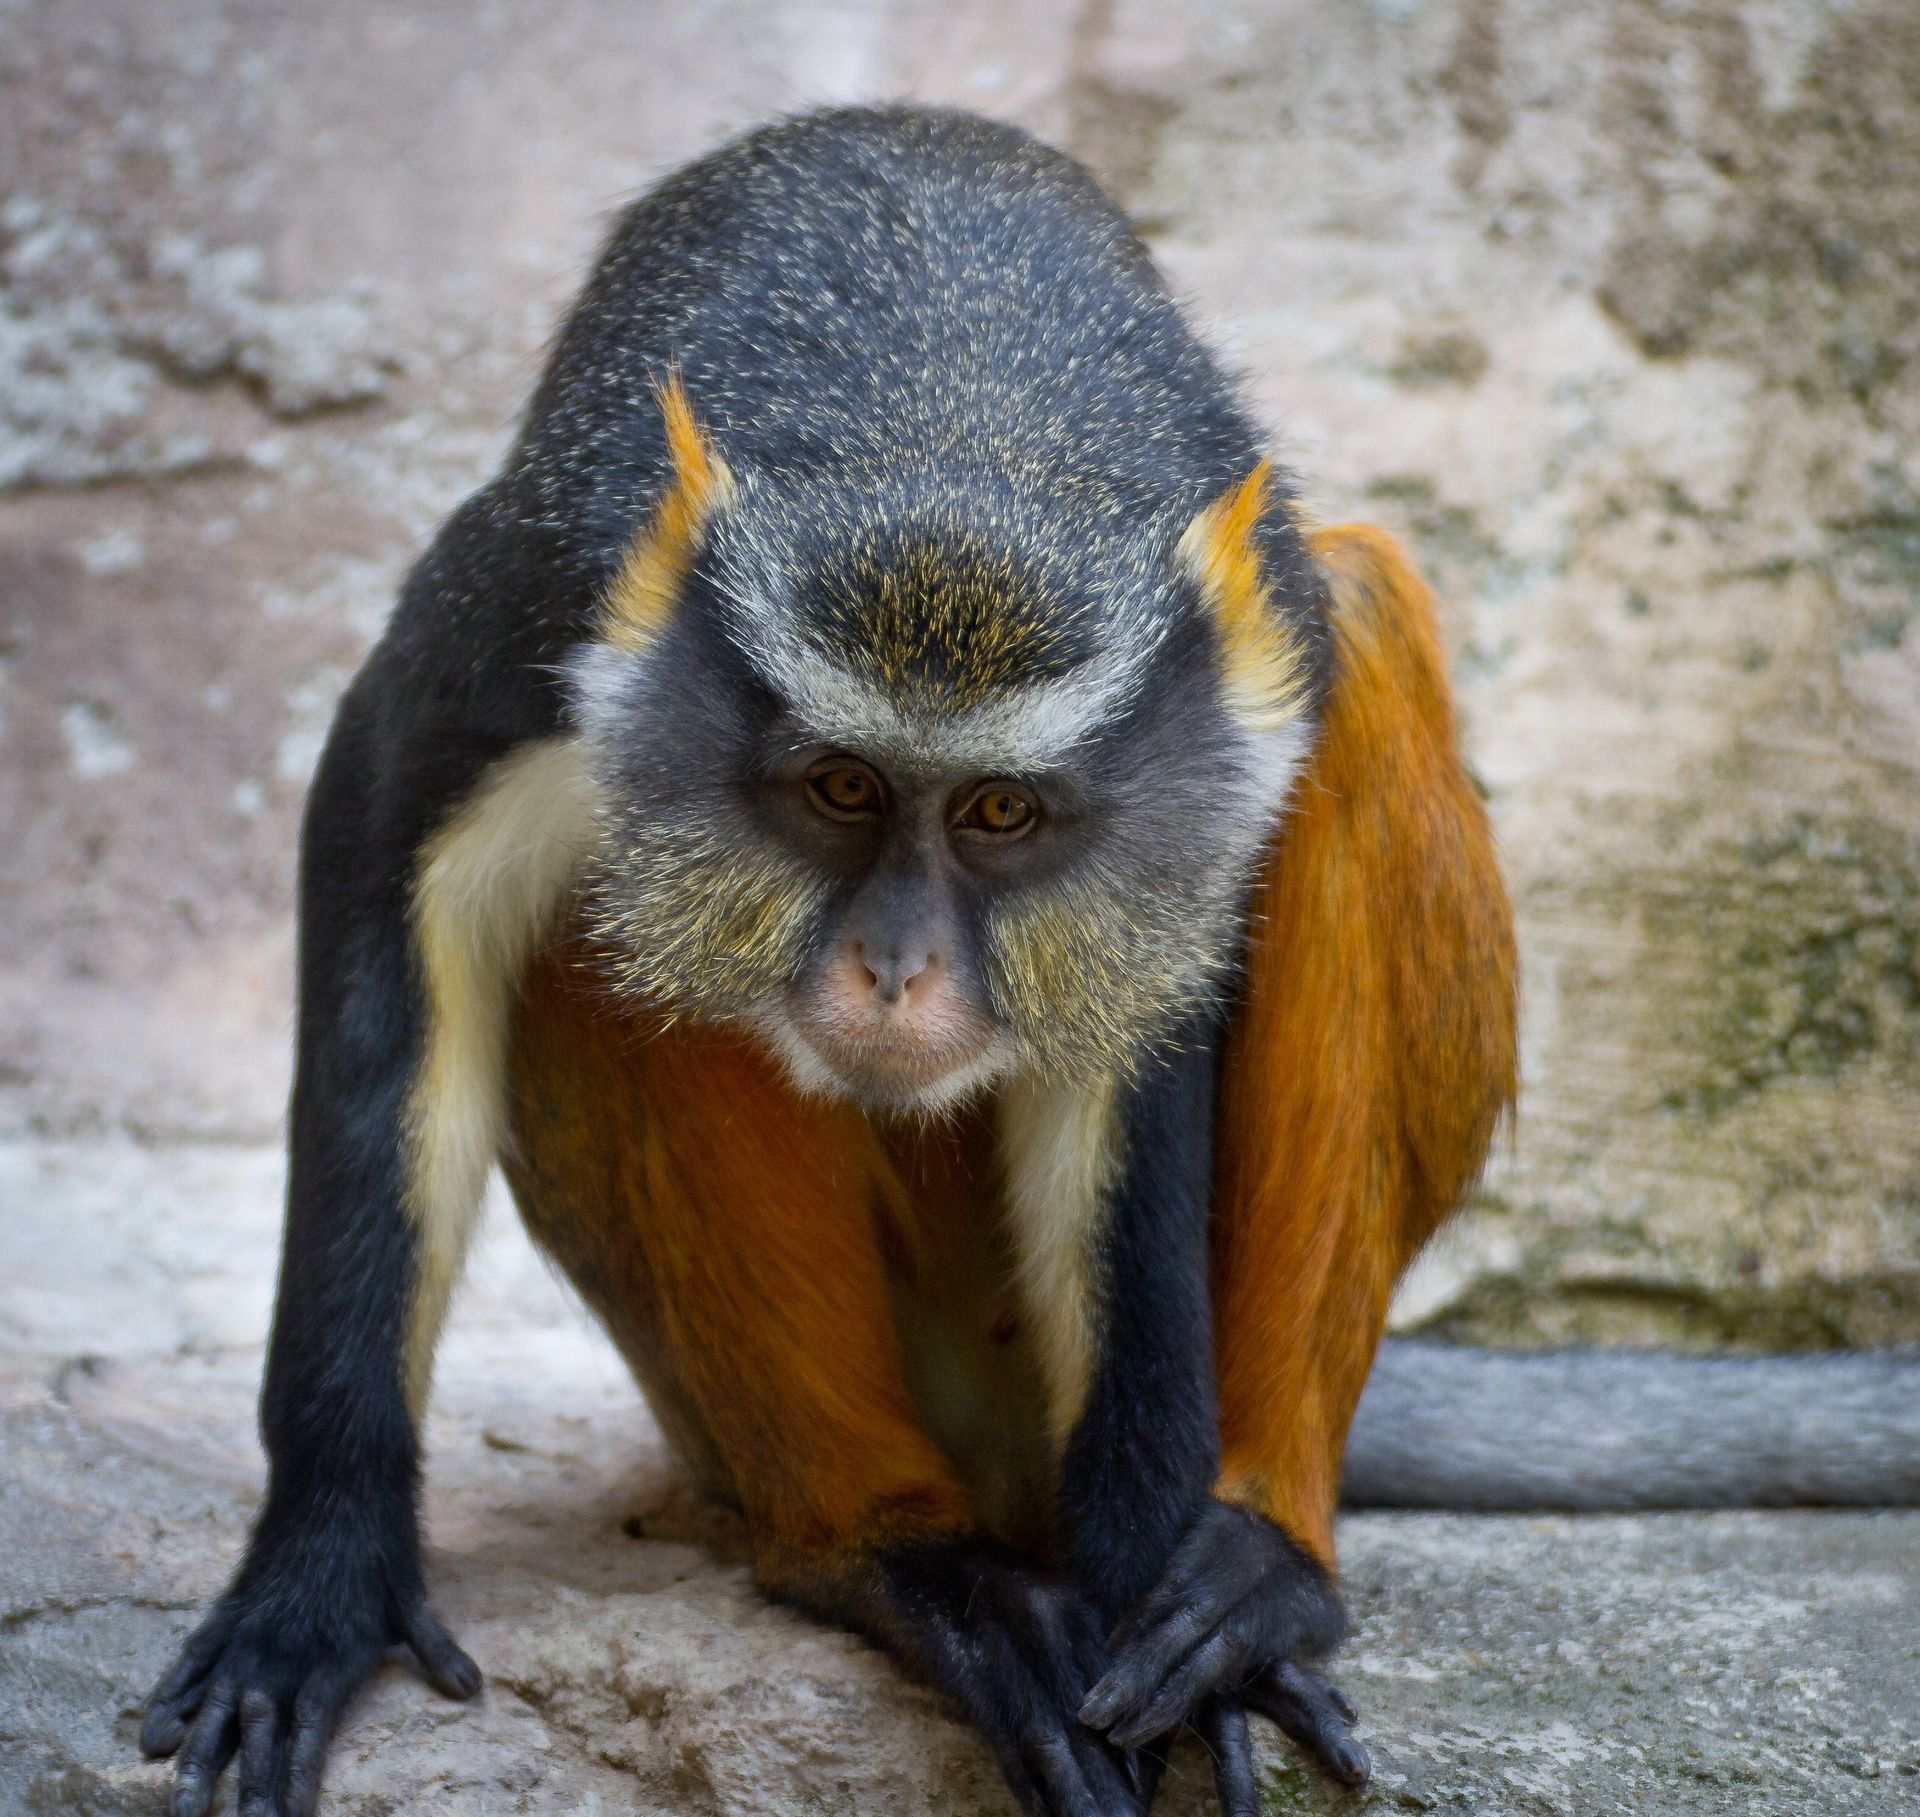 A portrait of a monkey.